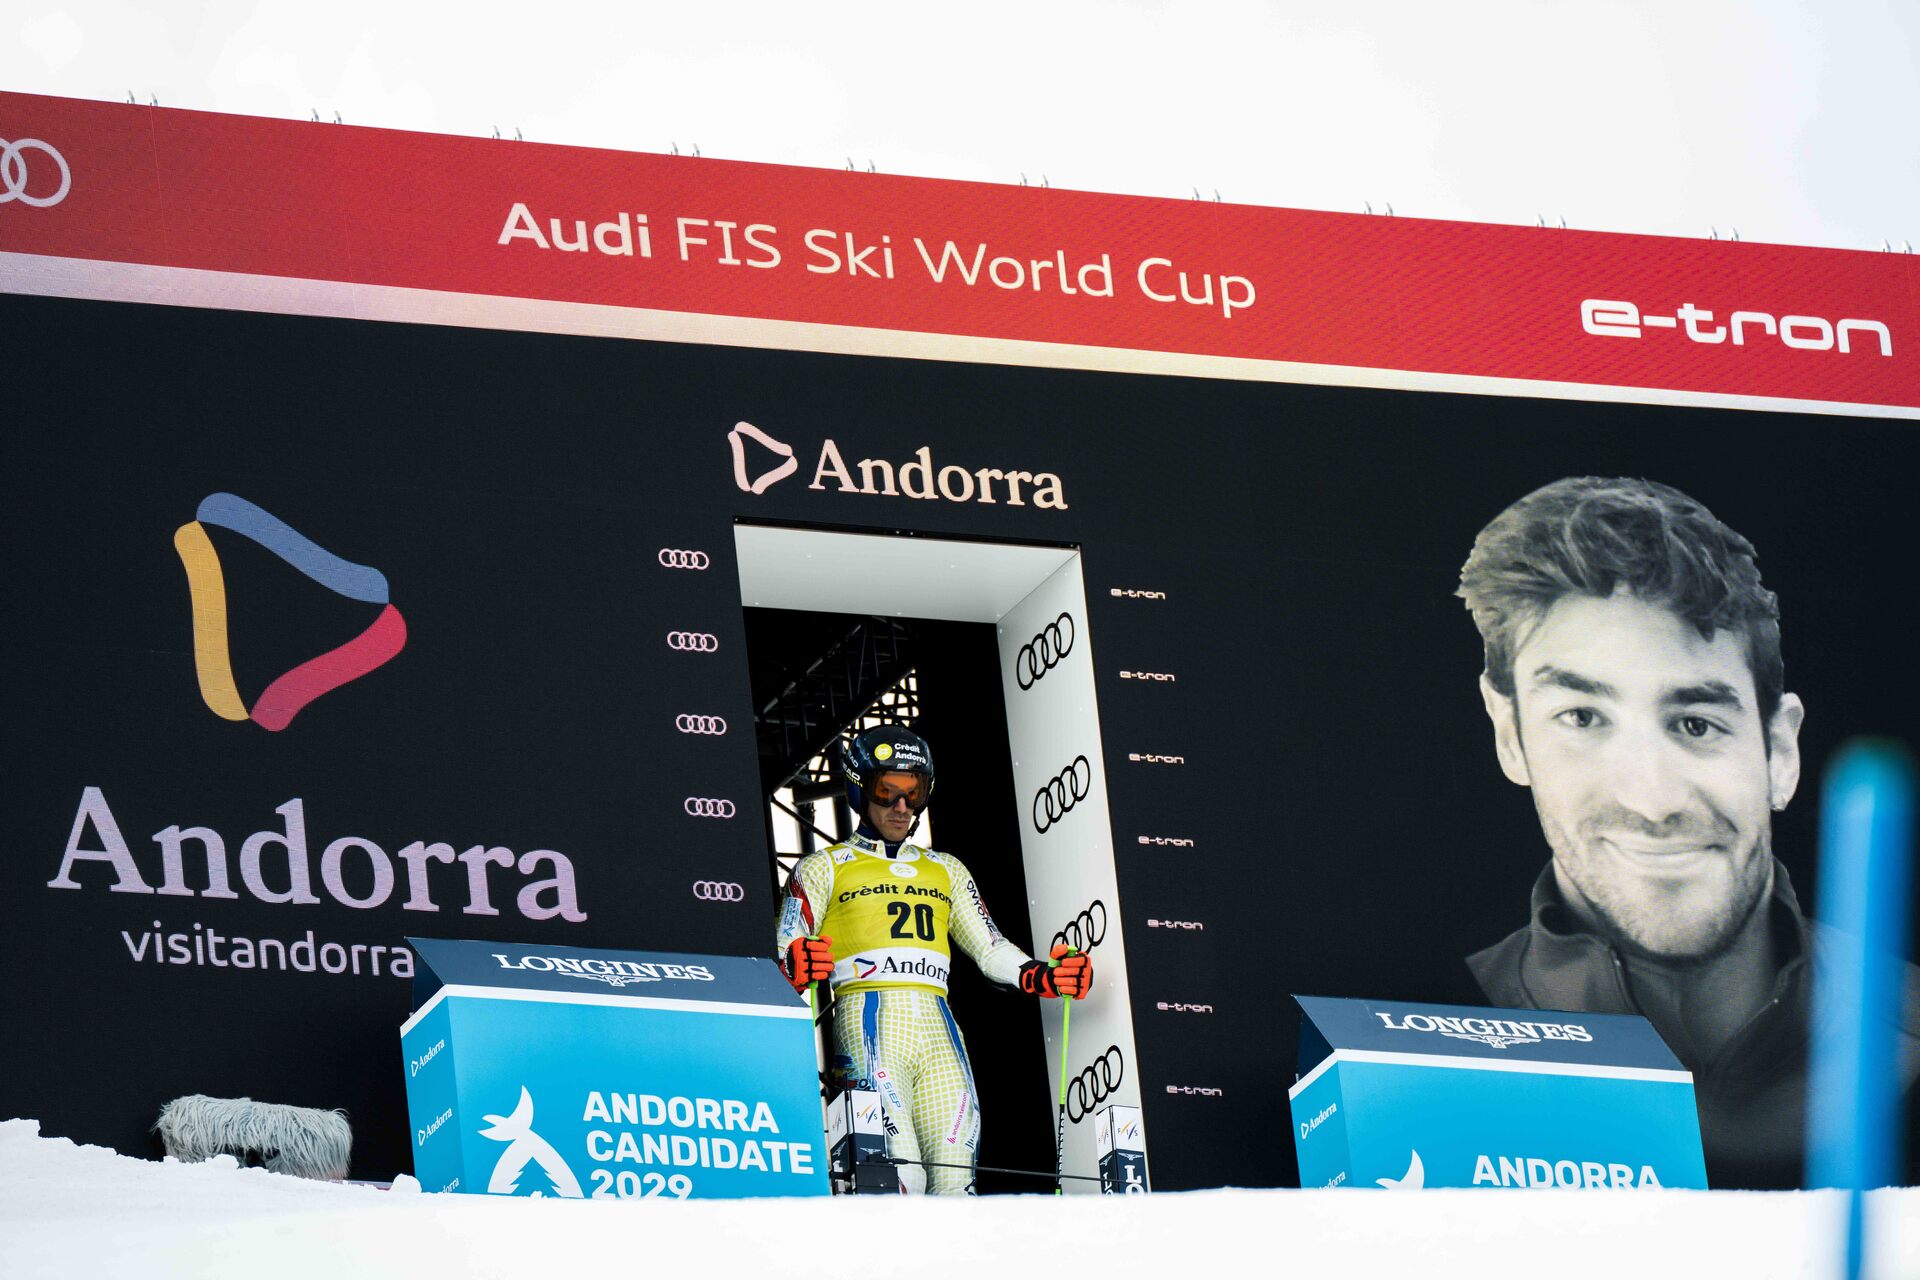 Finales Copa del Mundo esqui alpino en Andorra 2023